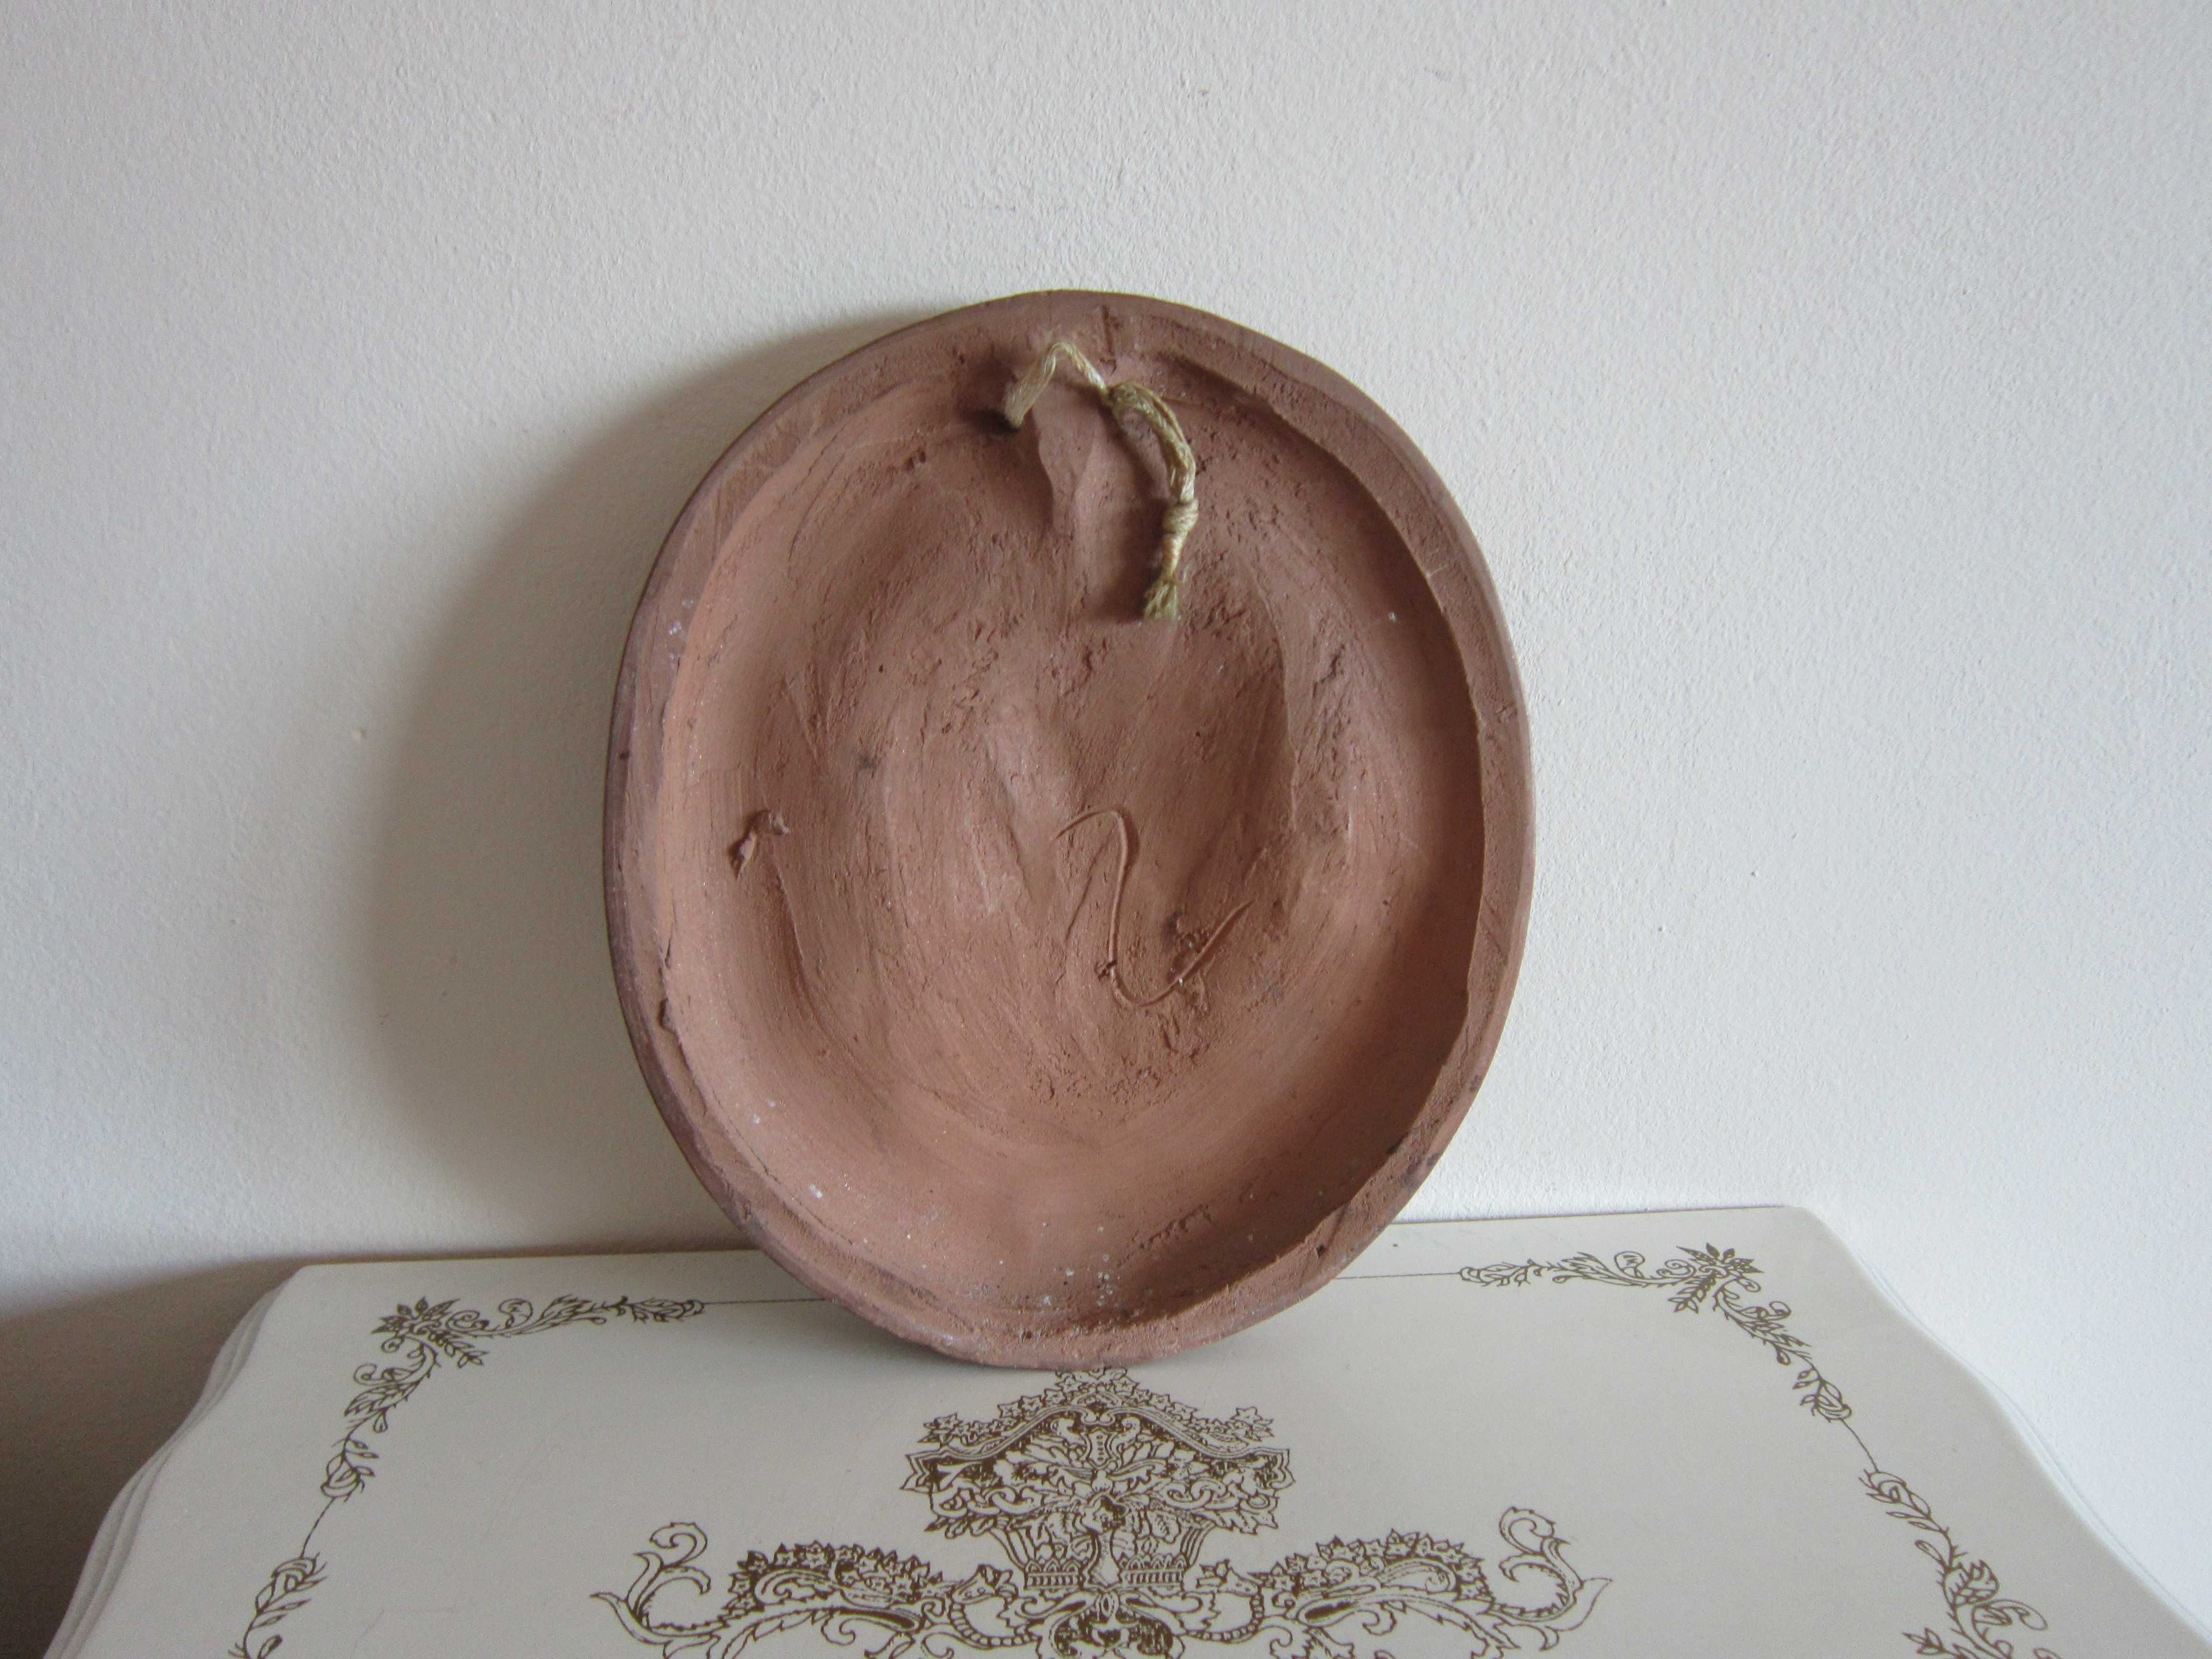 cadou rar "Isus pe Drumul Crucii" placa ceramica colectie vintage